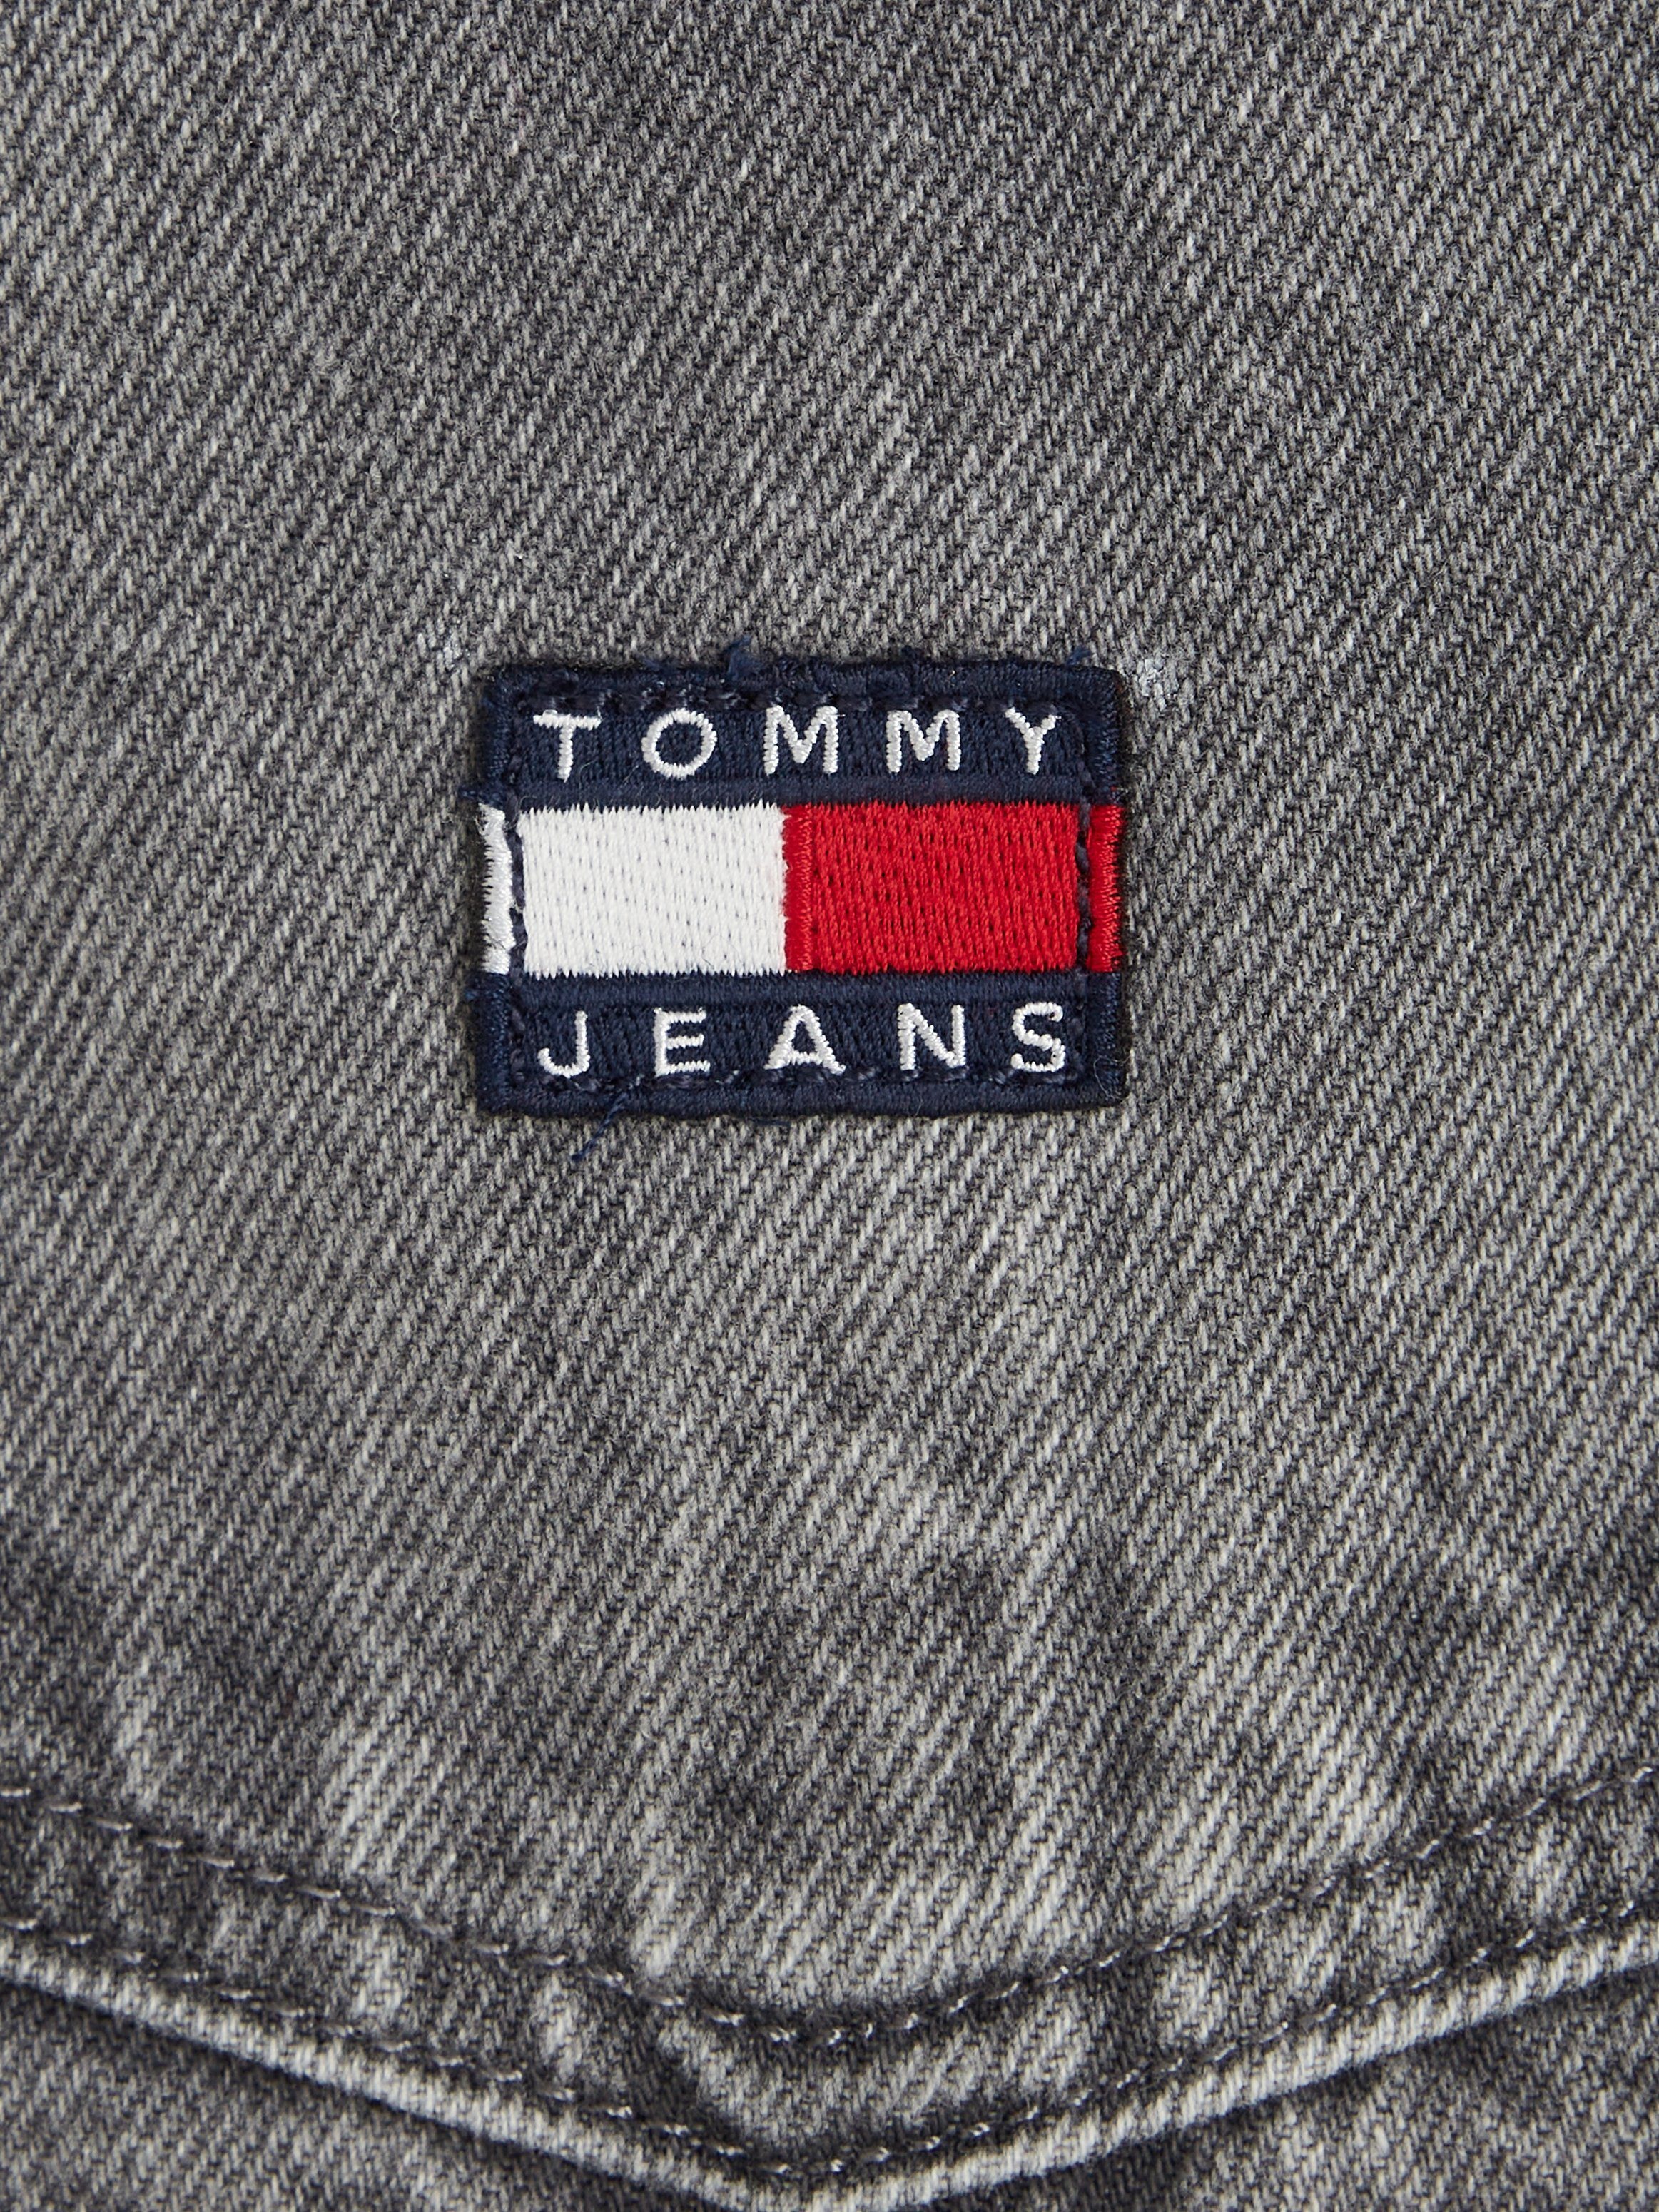 Tommy Jeans Jeanskleid DG4072 DRESS PINAFORE Markenlabel Jeans Tommy mit